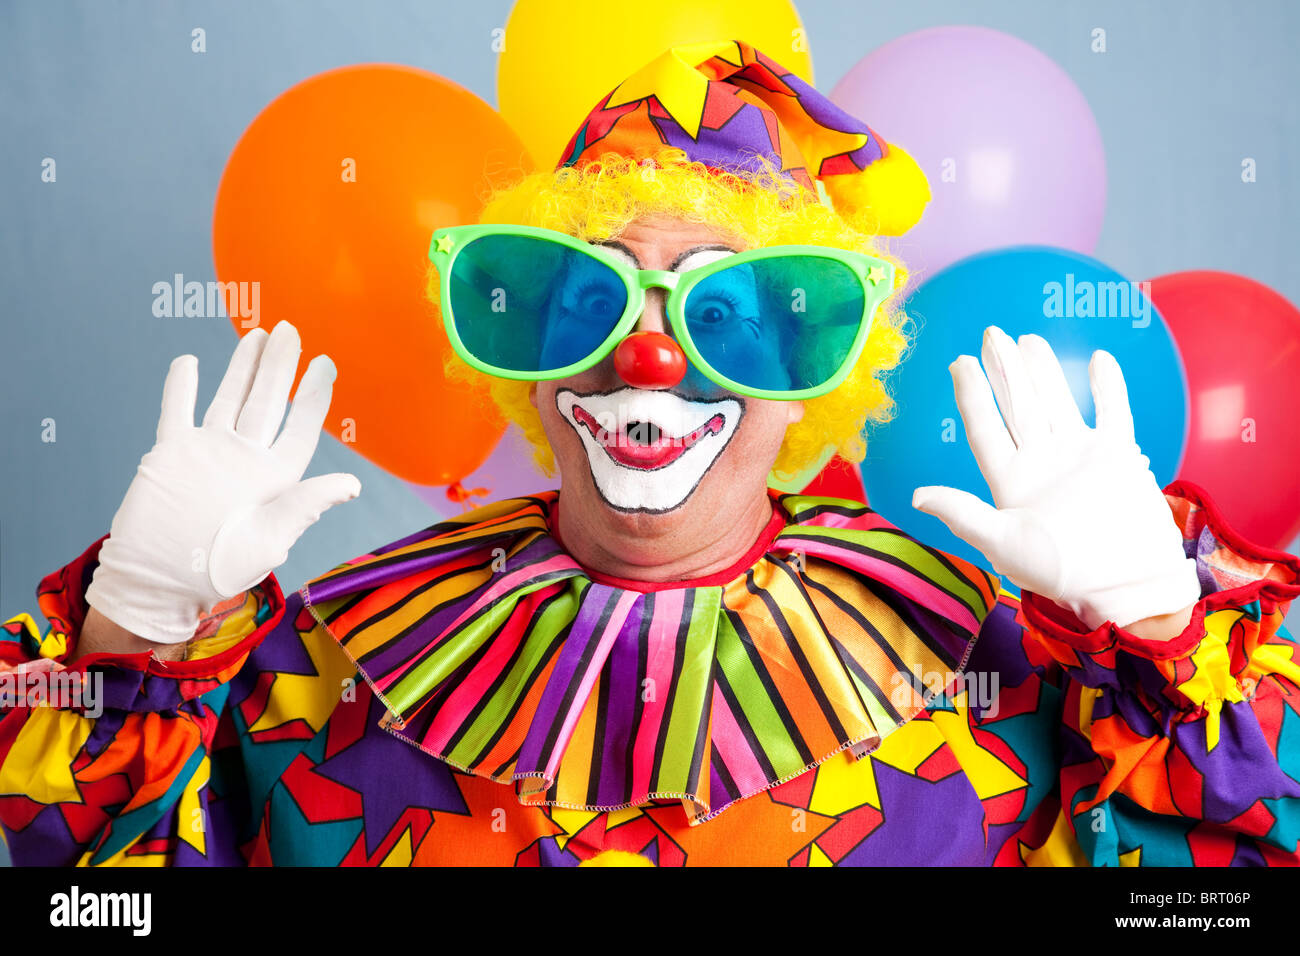 Dumme Clown in übergroßen Gläsern, überrascht Grimasse. Stockfoto